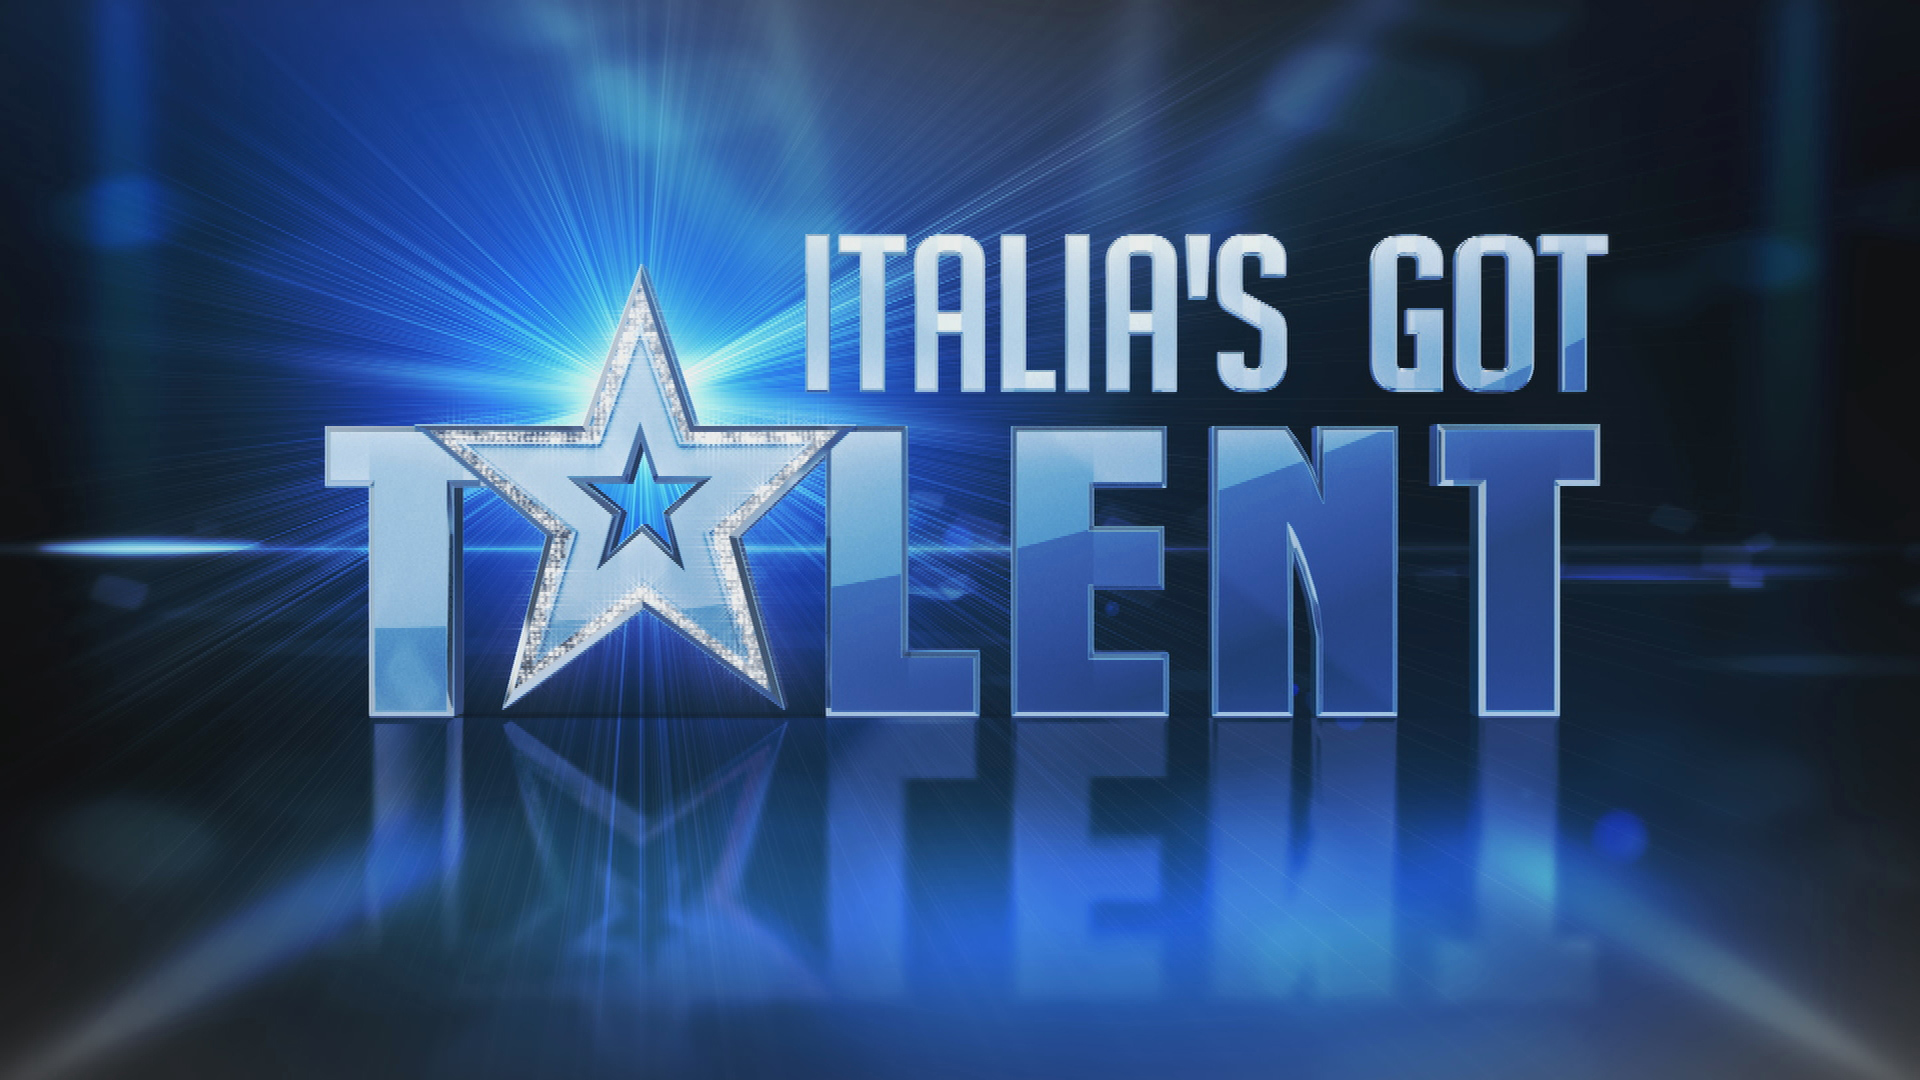 Italia's Got Talent 2021